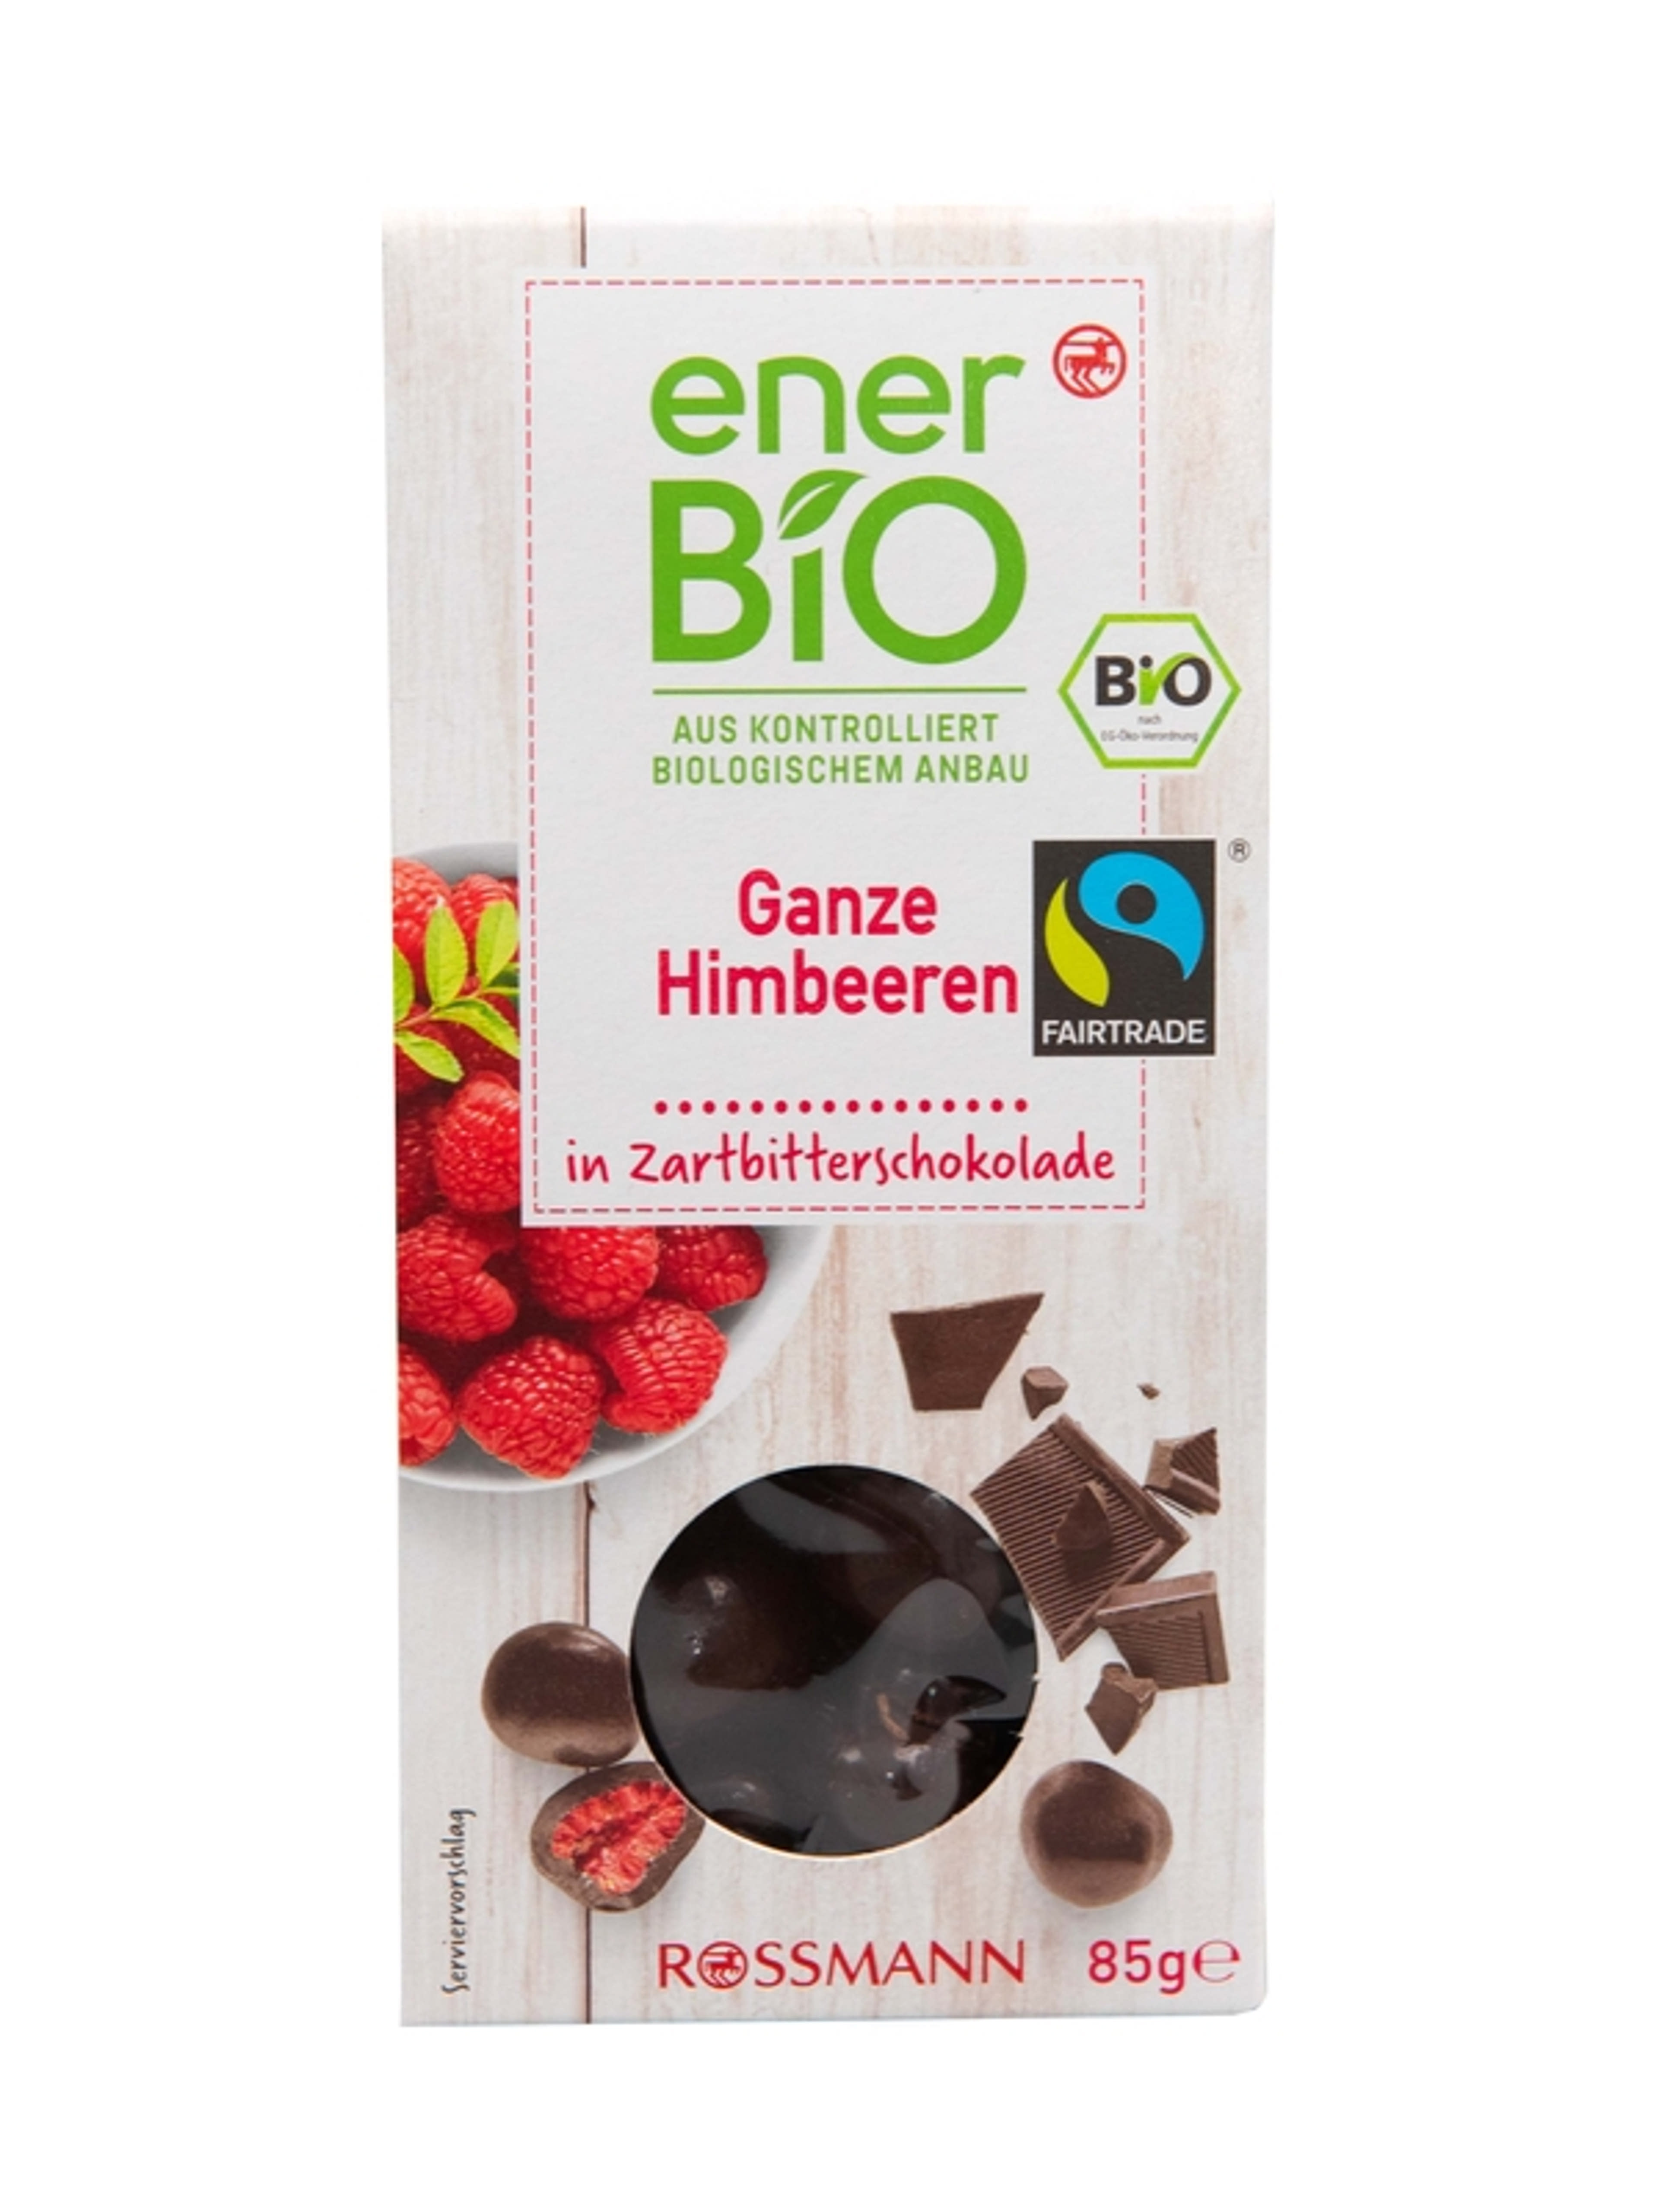 enerBio bio málna étcsokoládéban - 85 g
vegán, gluténmentes
ellenőrzött biológiai gazdálkodásból